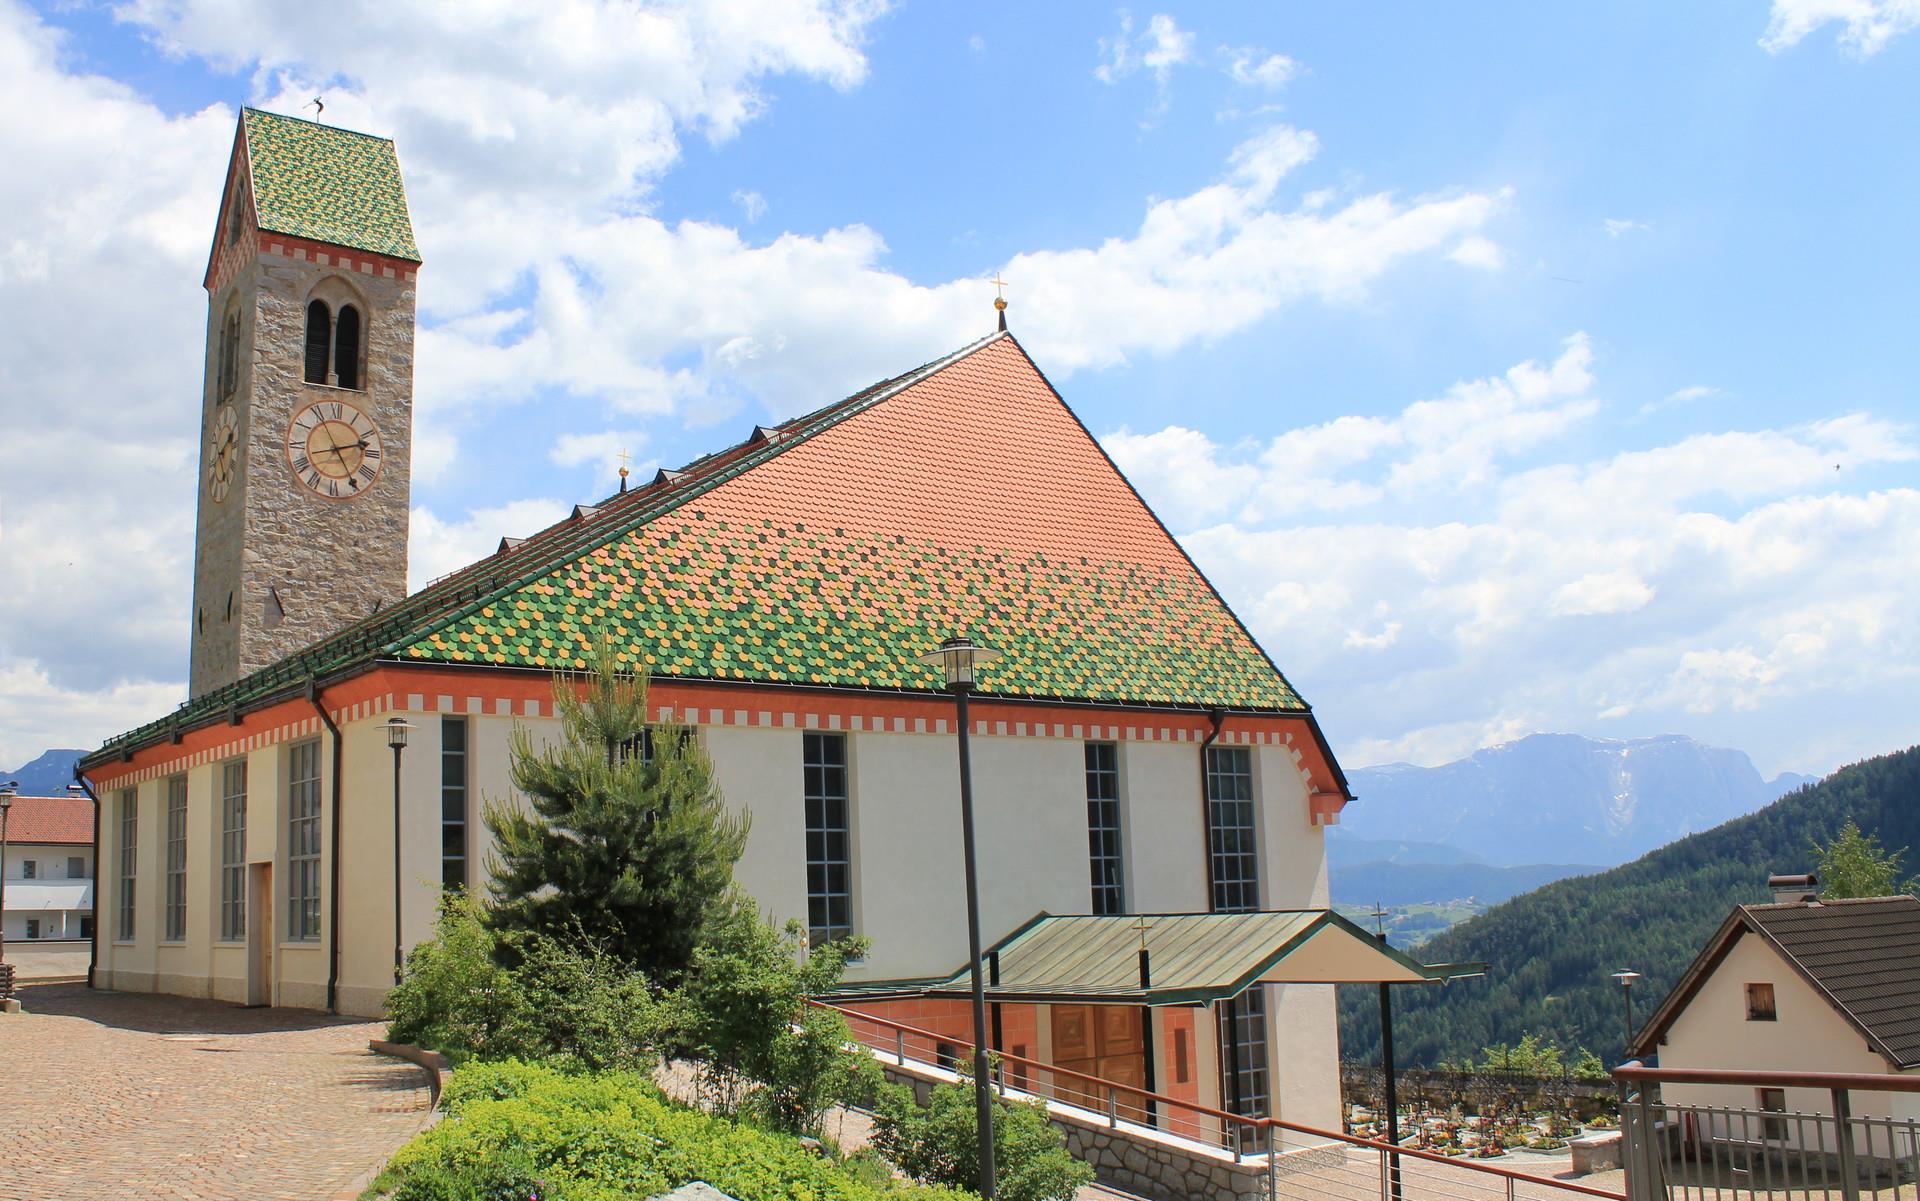 Little church "Holy Jakob" in Lazfons/Latzfons